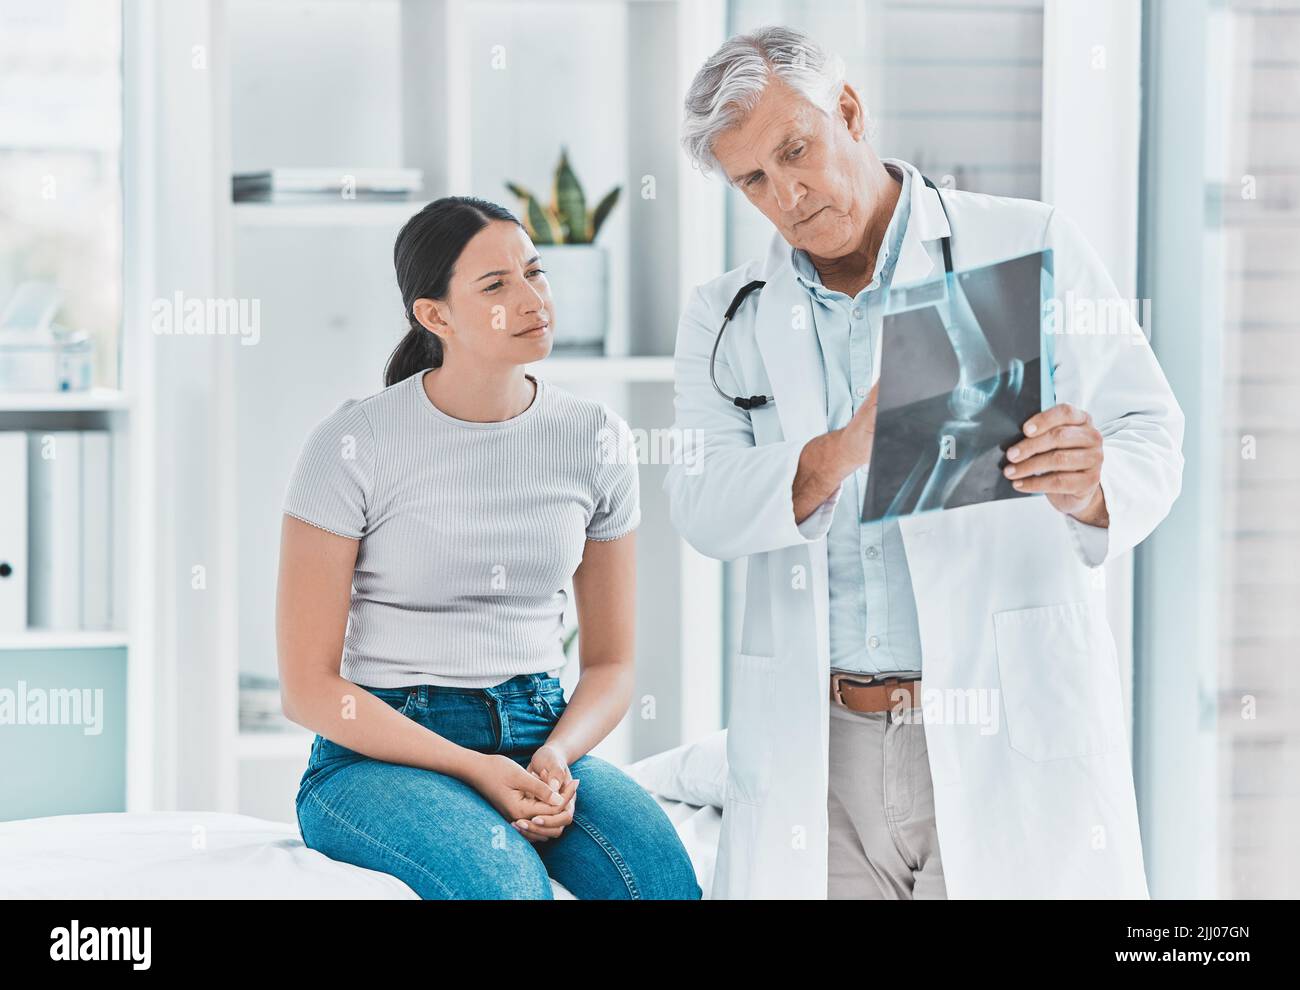 Hai fatto tre pause: Un medico e il suo paziente rivedono insieme i raggi X. Foto Stock